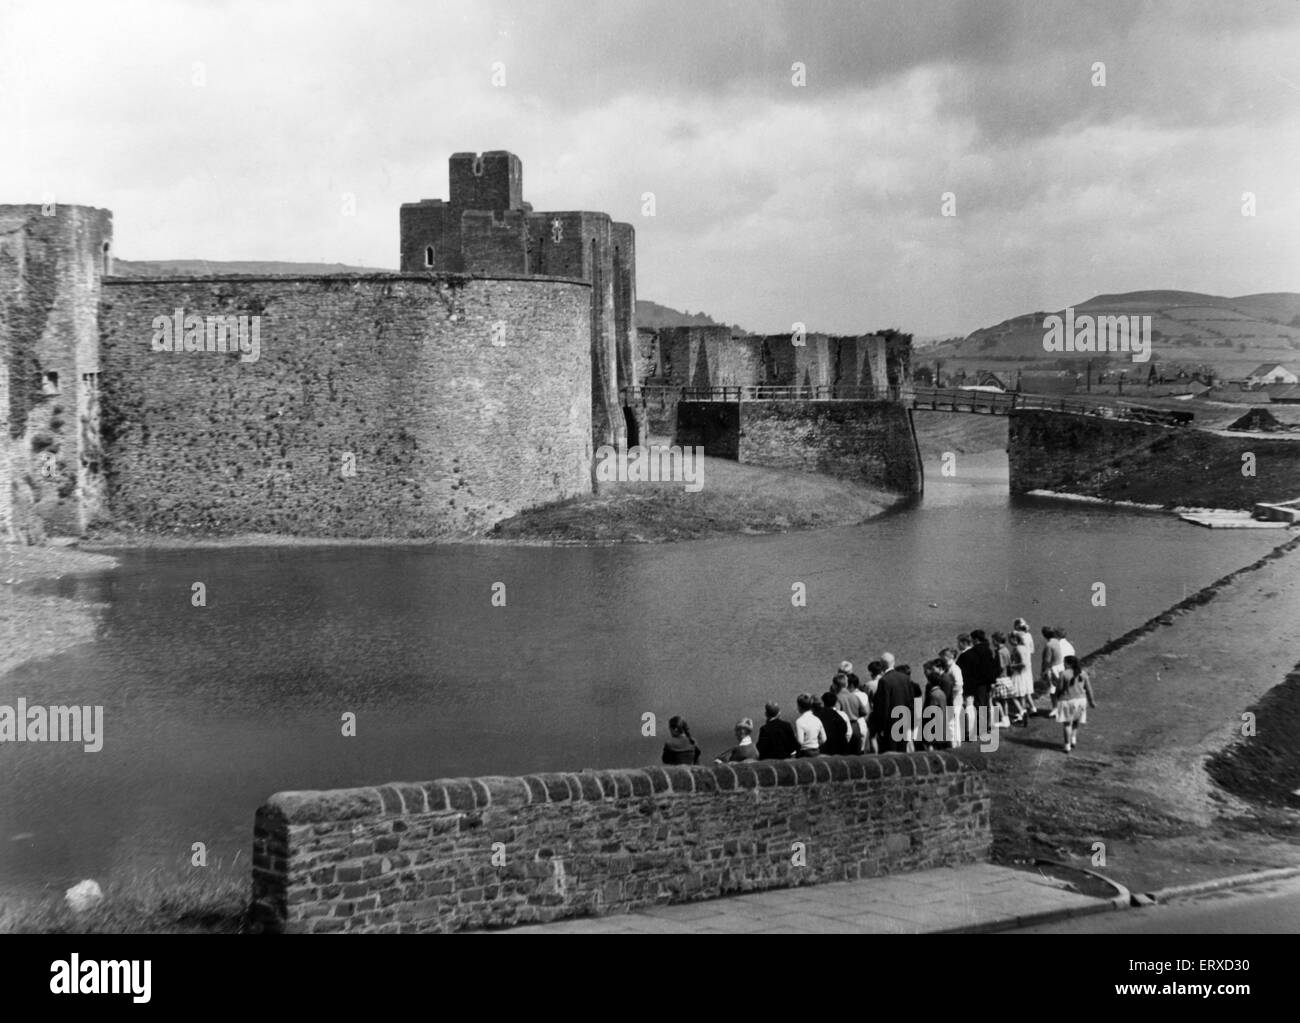 Château de Caerphilly, une fortification médiévale à Caerphilly, dans le sud du Pays de Galles. 21 juin 1962. L'eau dans les douves autour de château de Caerphilly a restauré une apparence il avait cours il y a 300 ans. Il marque l'achèvement de la dernière étape dans le château de la défense de l'eau programme de récupération. Le château a reçu sa 17e siècle quand Richard Thomson, secrétaire parlementaire du ministère des Travaux publics a transformé une vanne d'eau. Banque D'Images